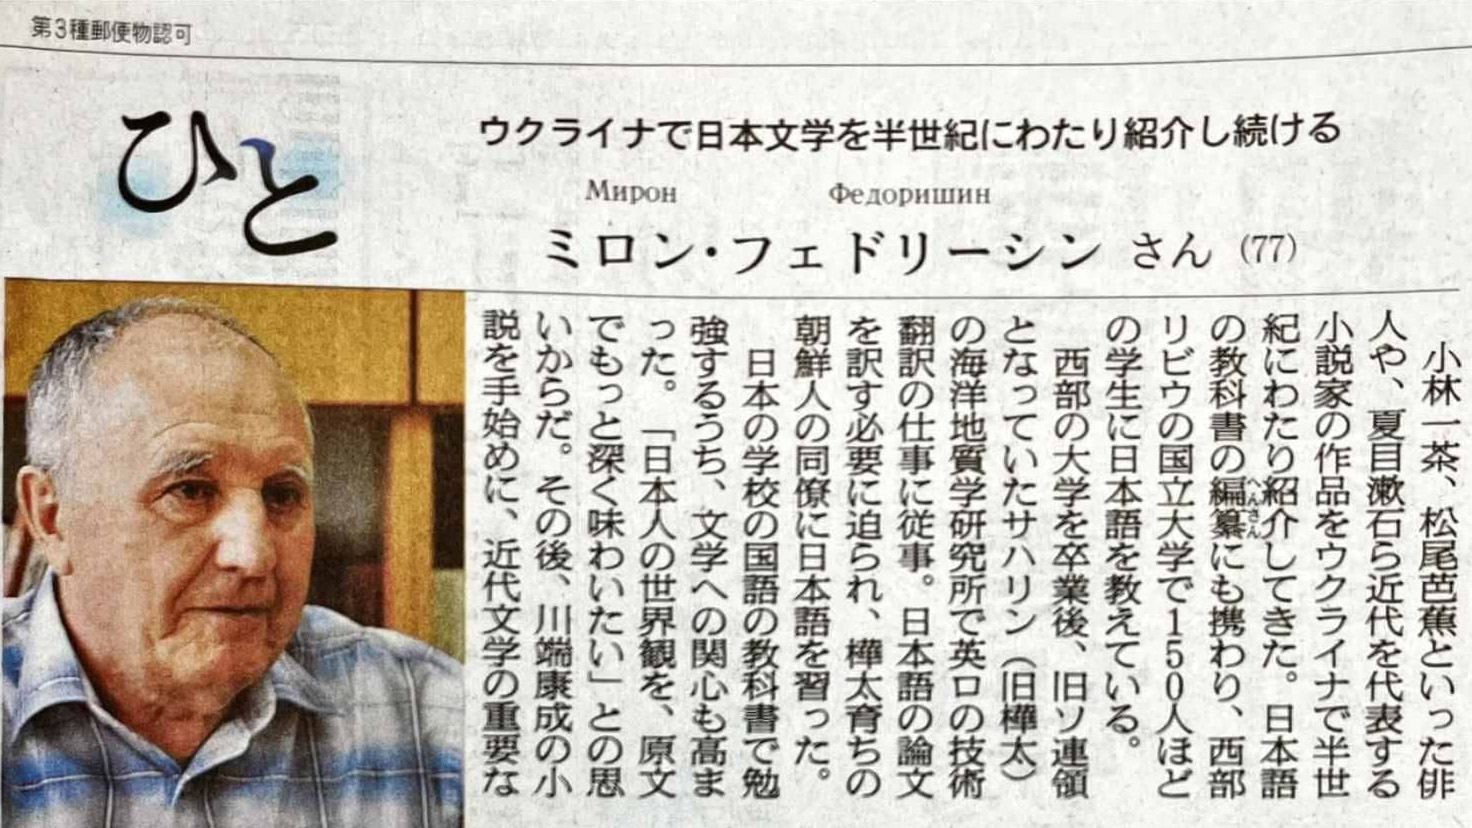 Стаття в газеті Asahi Shimbun